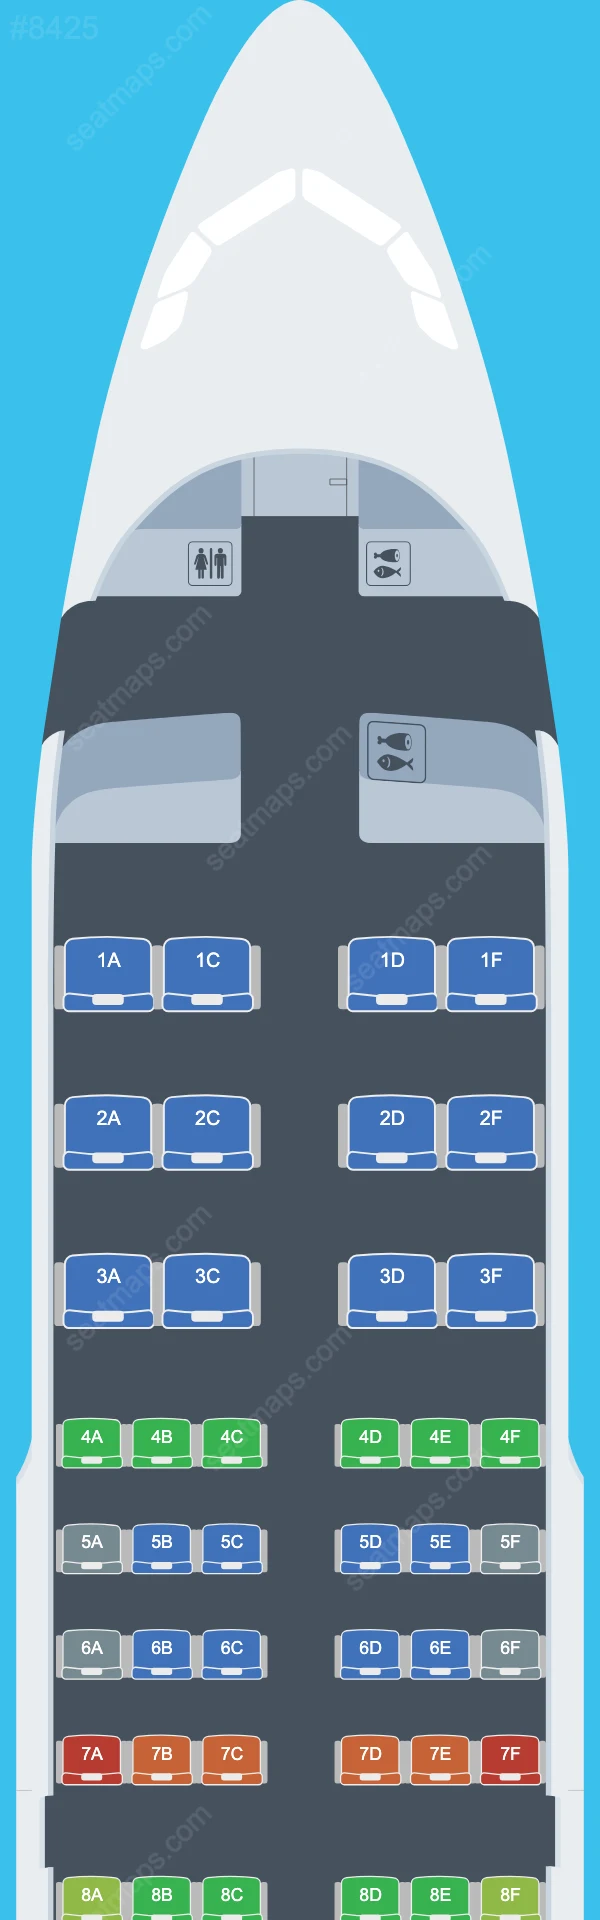 Air Senegal Airbus A319 Seat Maps A319-100